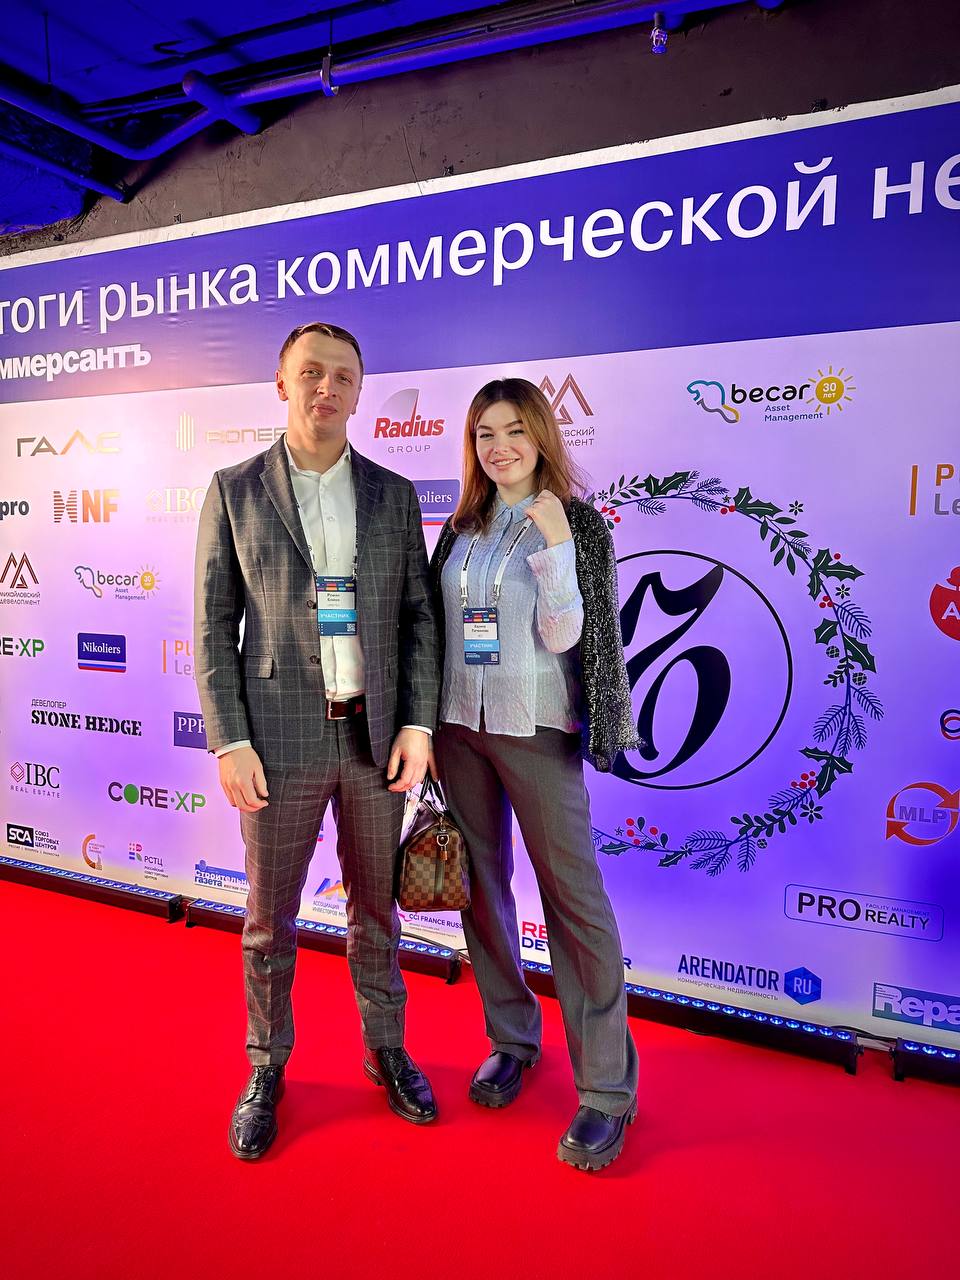 Роман Бойко принял участие в мероприятии «Итоги рынка коммерческой недвижимости», организованном ИД «Коммерсантъ»